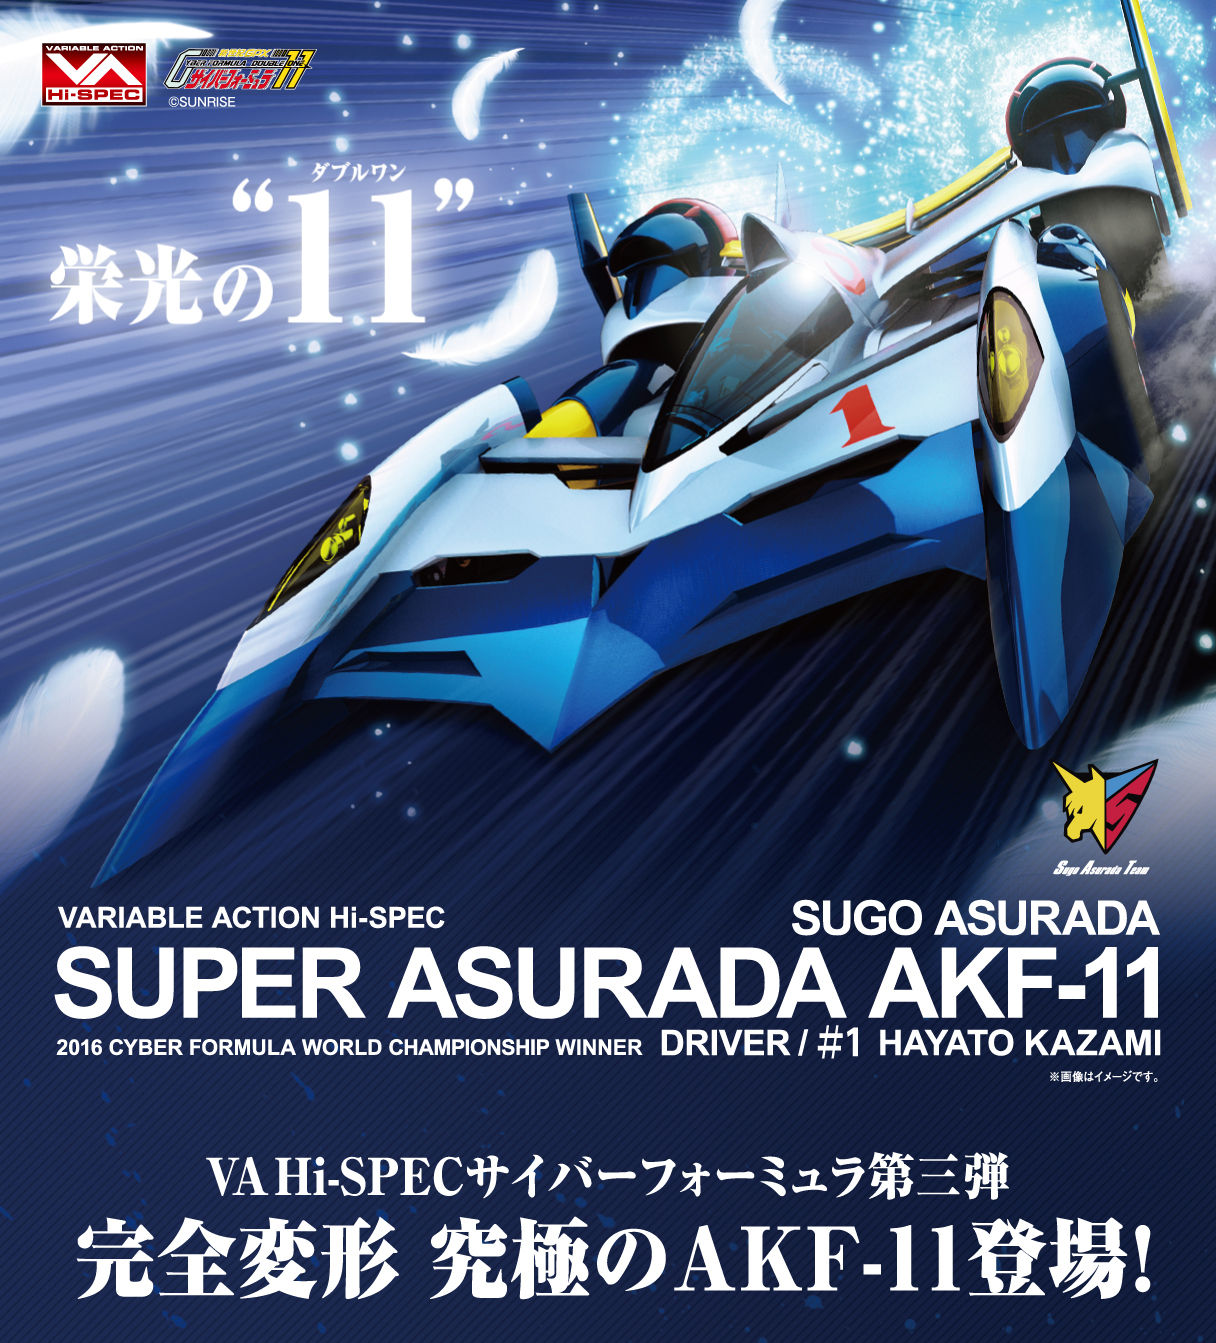 ヴァリアブルアクション Hi-SPEC『スーパーアスラーダ AKF-11』新世紀GPXサイバーフォーミュラ 1/18 可動モデル-010